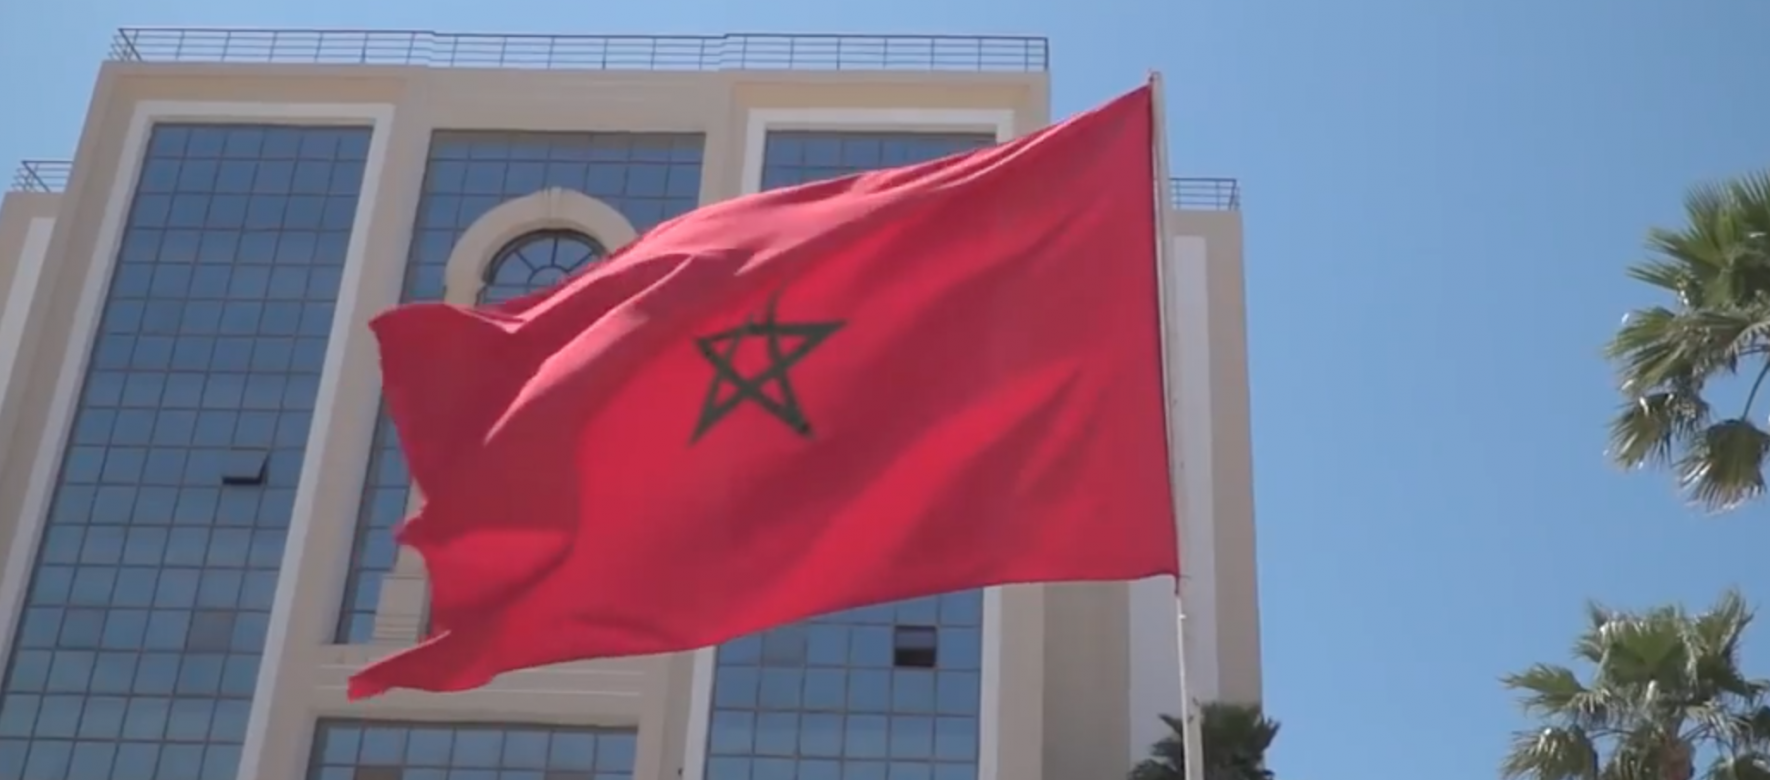 Pôle Systematic Paris-Region au côté de la Région Île-de-France durant la visite officielle au Maroc